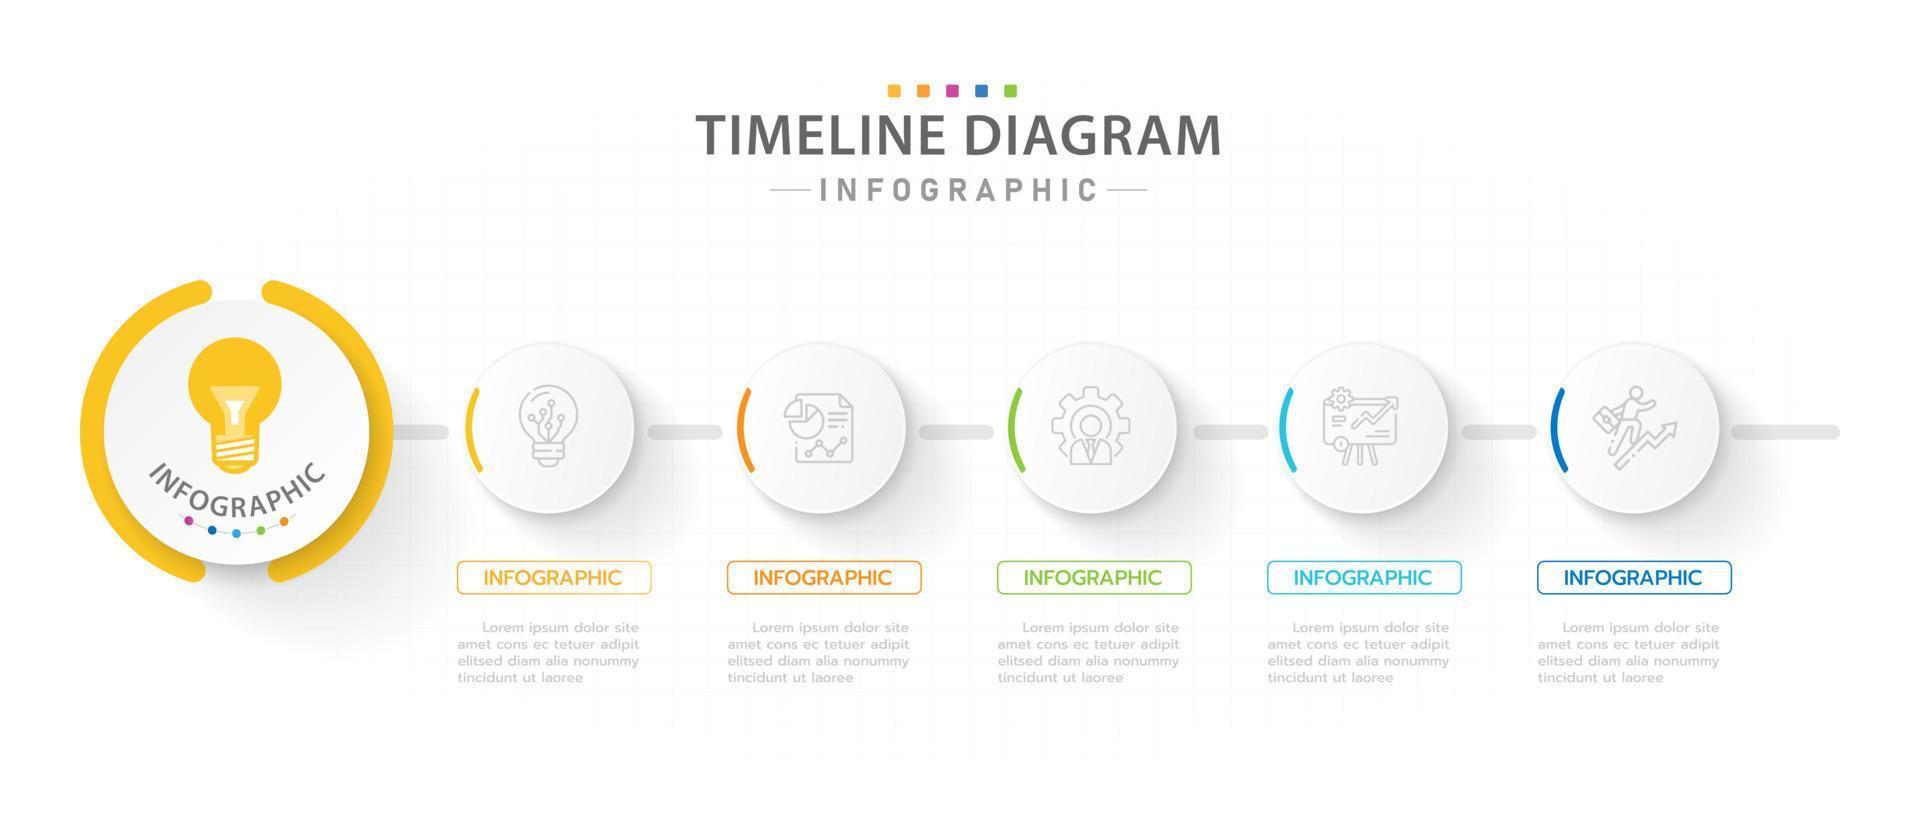 modelo de infográfico para negócios. Diagrama de linha do tempo moderno de 5 etapas com tópicos de círculo de progresso, infográfico de vetor de apresentação.